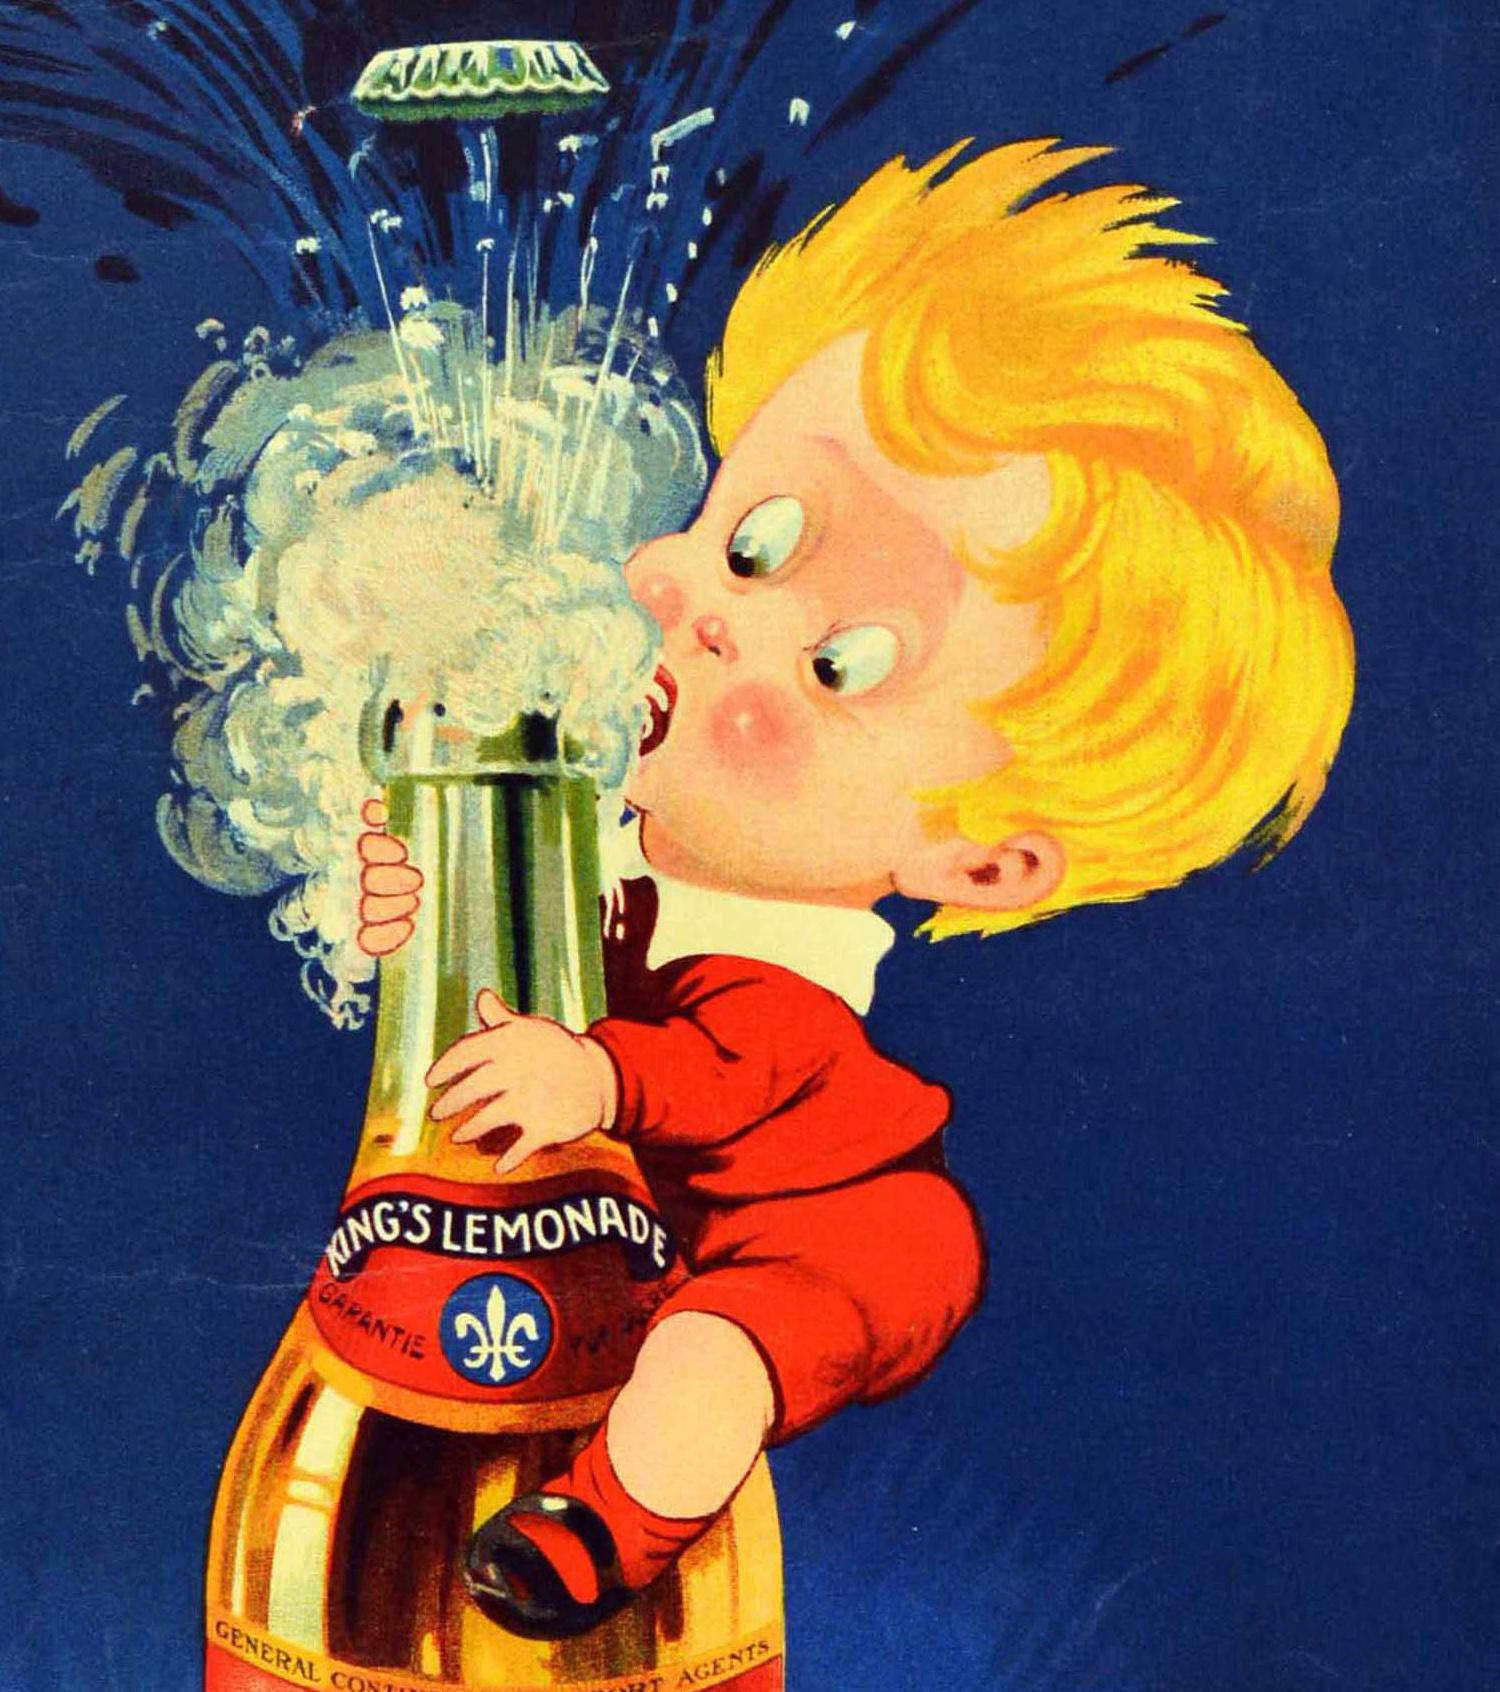 Affiche publicitaire originale et ancienne pour la limonade King's Lemonade, avec une illustration colorée et amusante d'un jeune garçon grimpant sur une grande bouteille pour boire la limonade alors que le couvercle se soulève et fait des bulles,